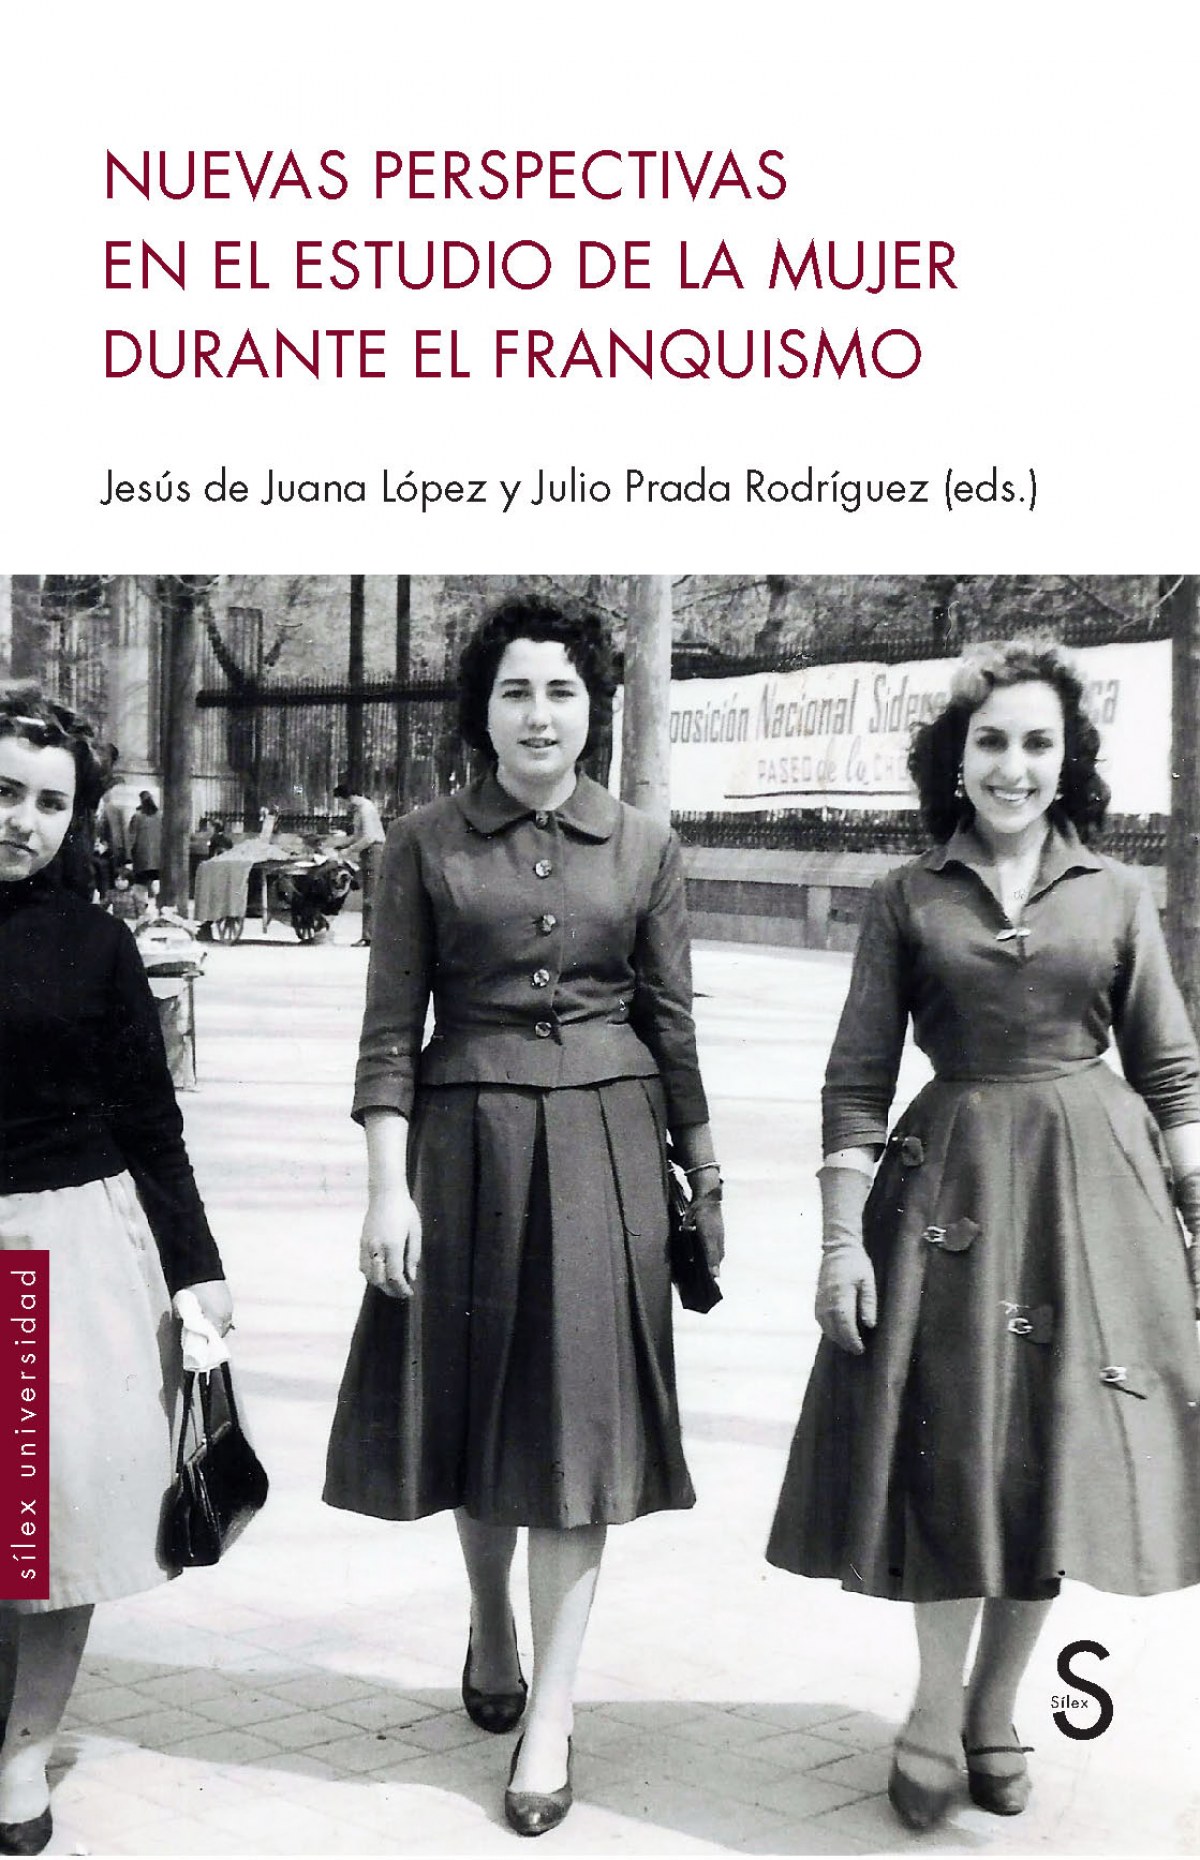 Imagen de portada del libro Nuevas perspectivas en el estudio de la mujer durante el franquismo